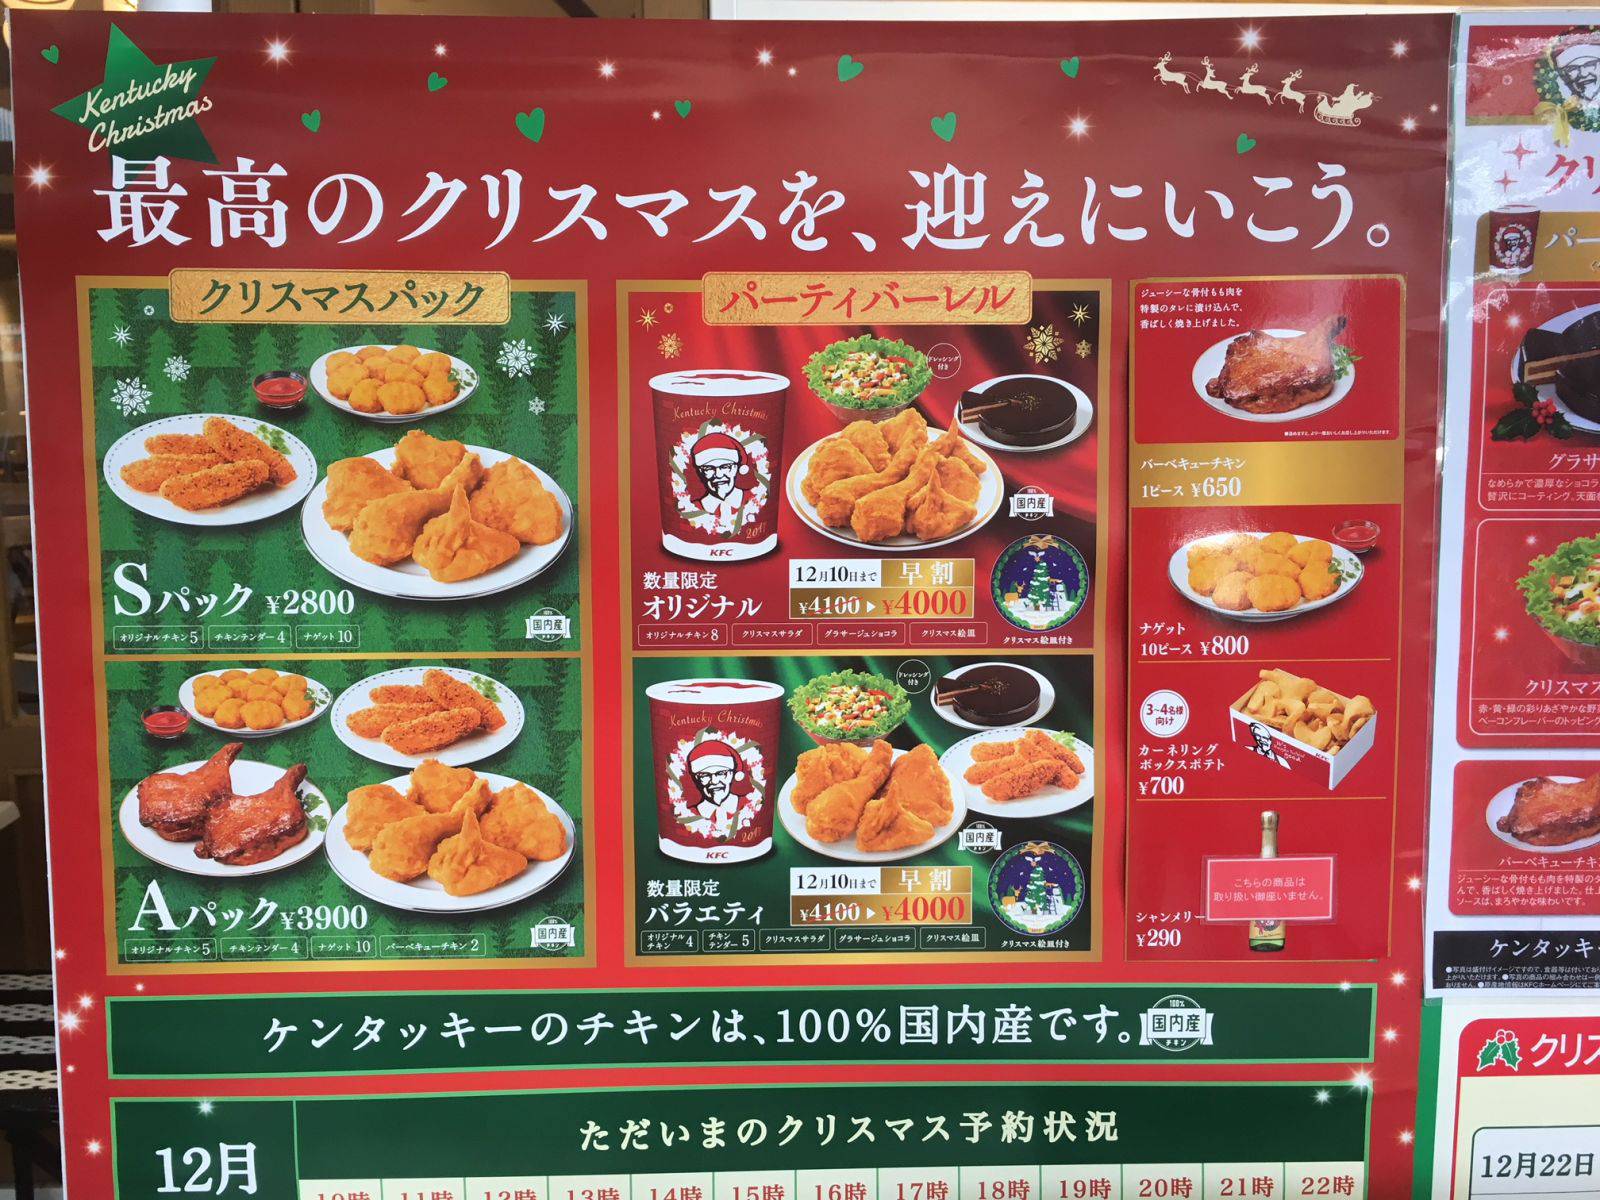 ¿Por qué en Japón cenan pollo frito de KFC en Navidad? Sociedad La